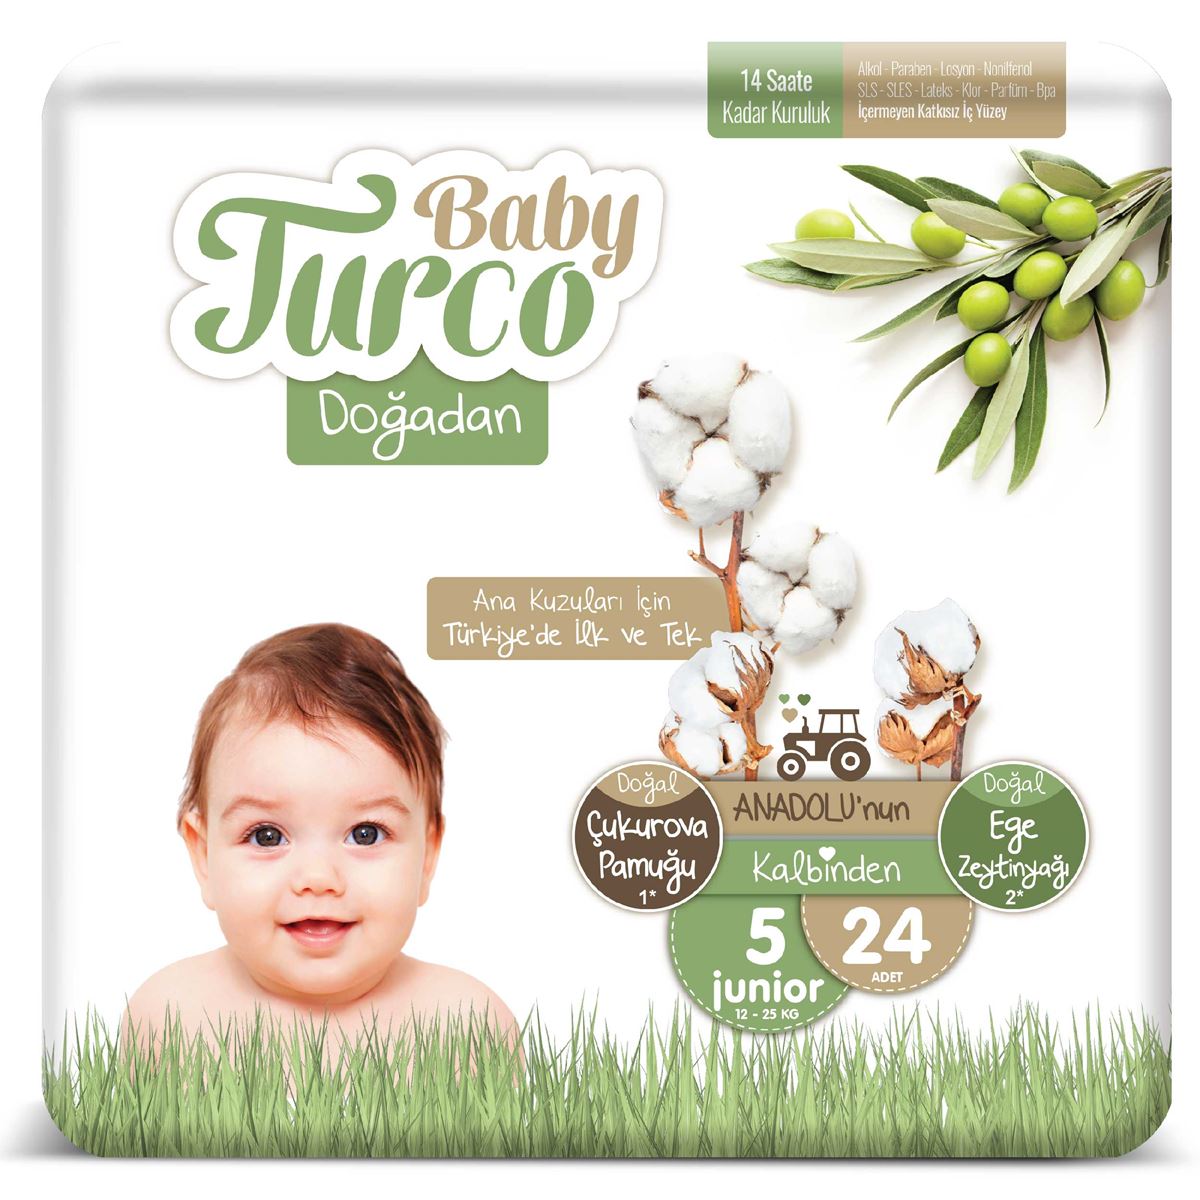 Baby Turco Doğadan 5 Numara Junıor Tanışma Paketi  24 adet